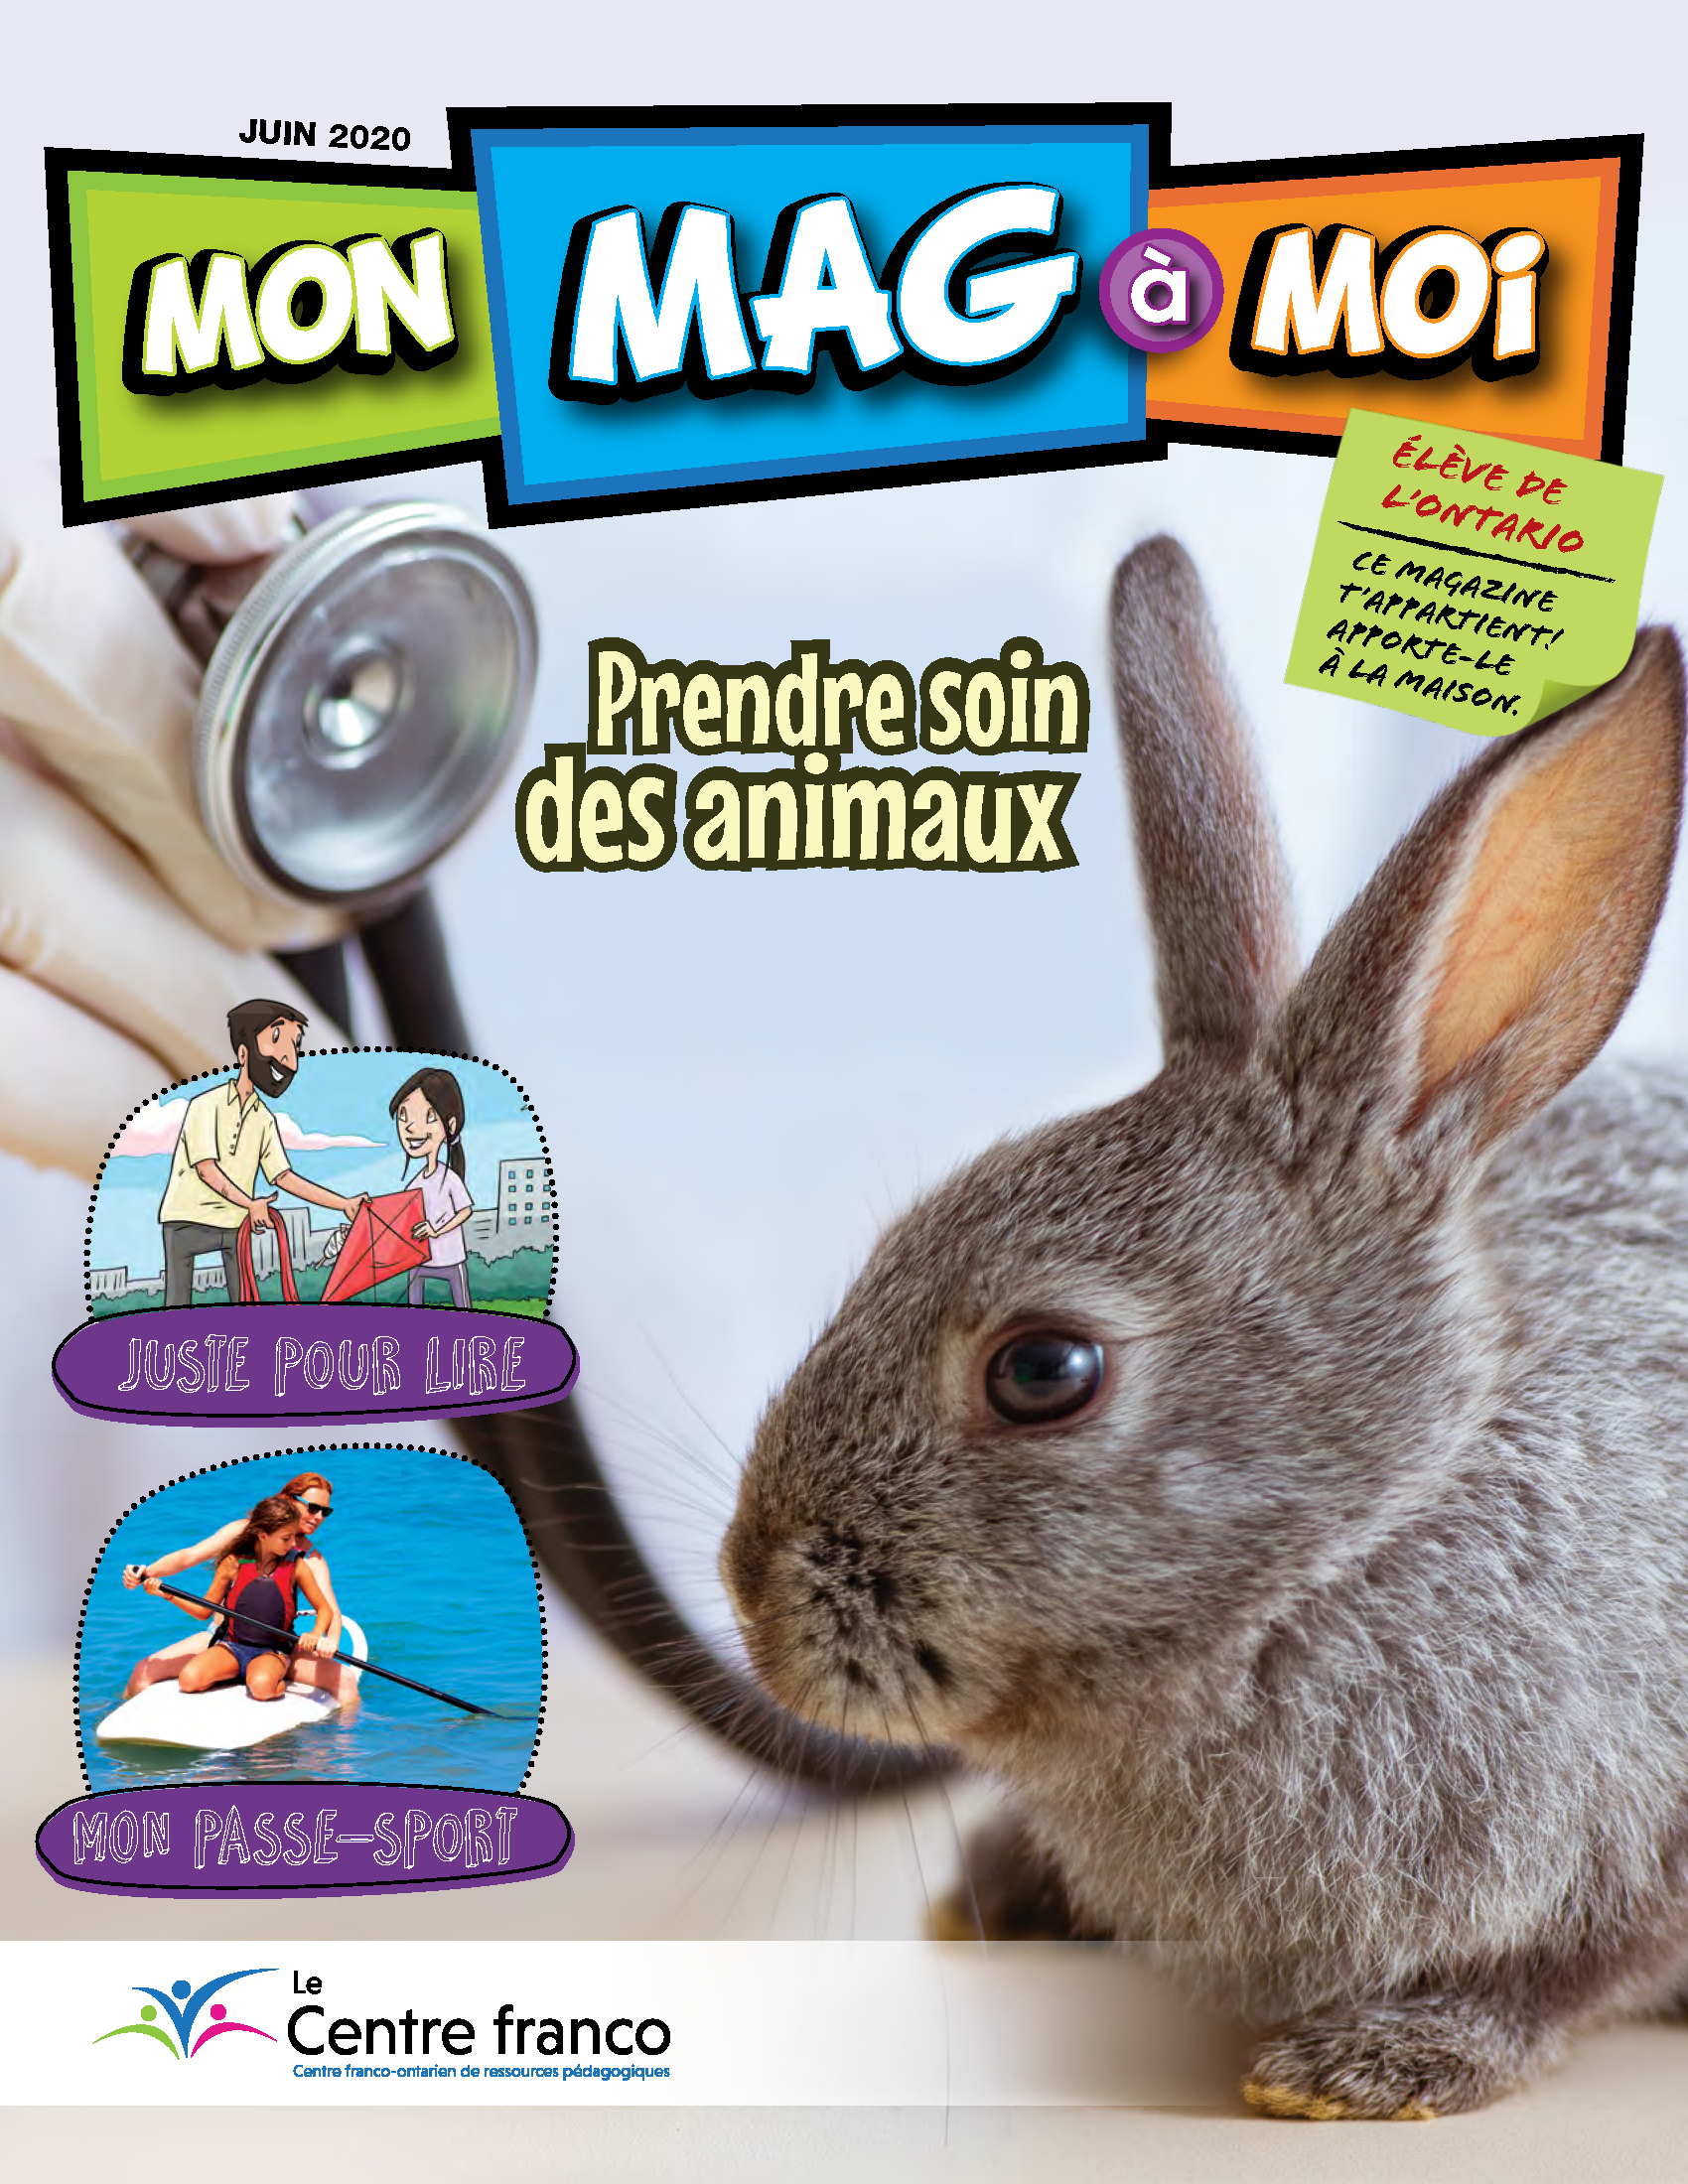 Visionner le magazine Mon Mag à Moi volume 13 numéro 3.